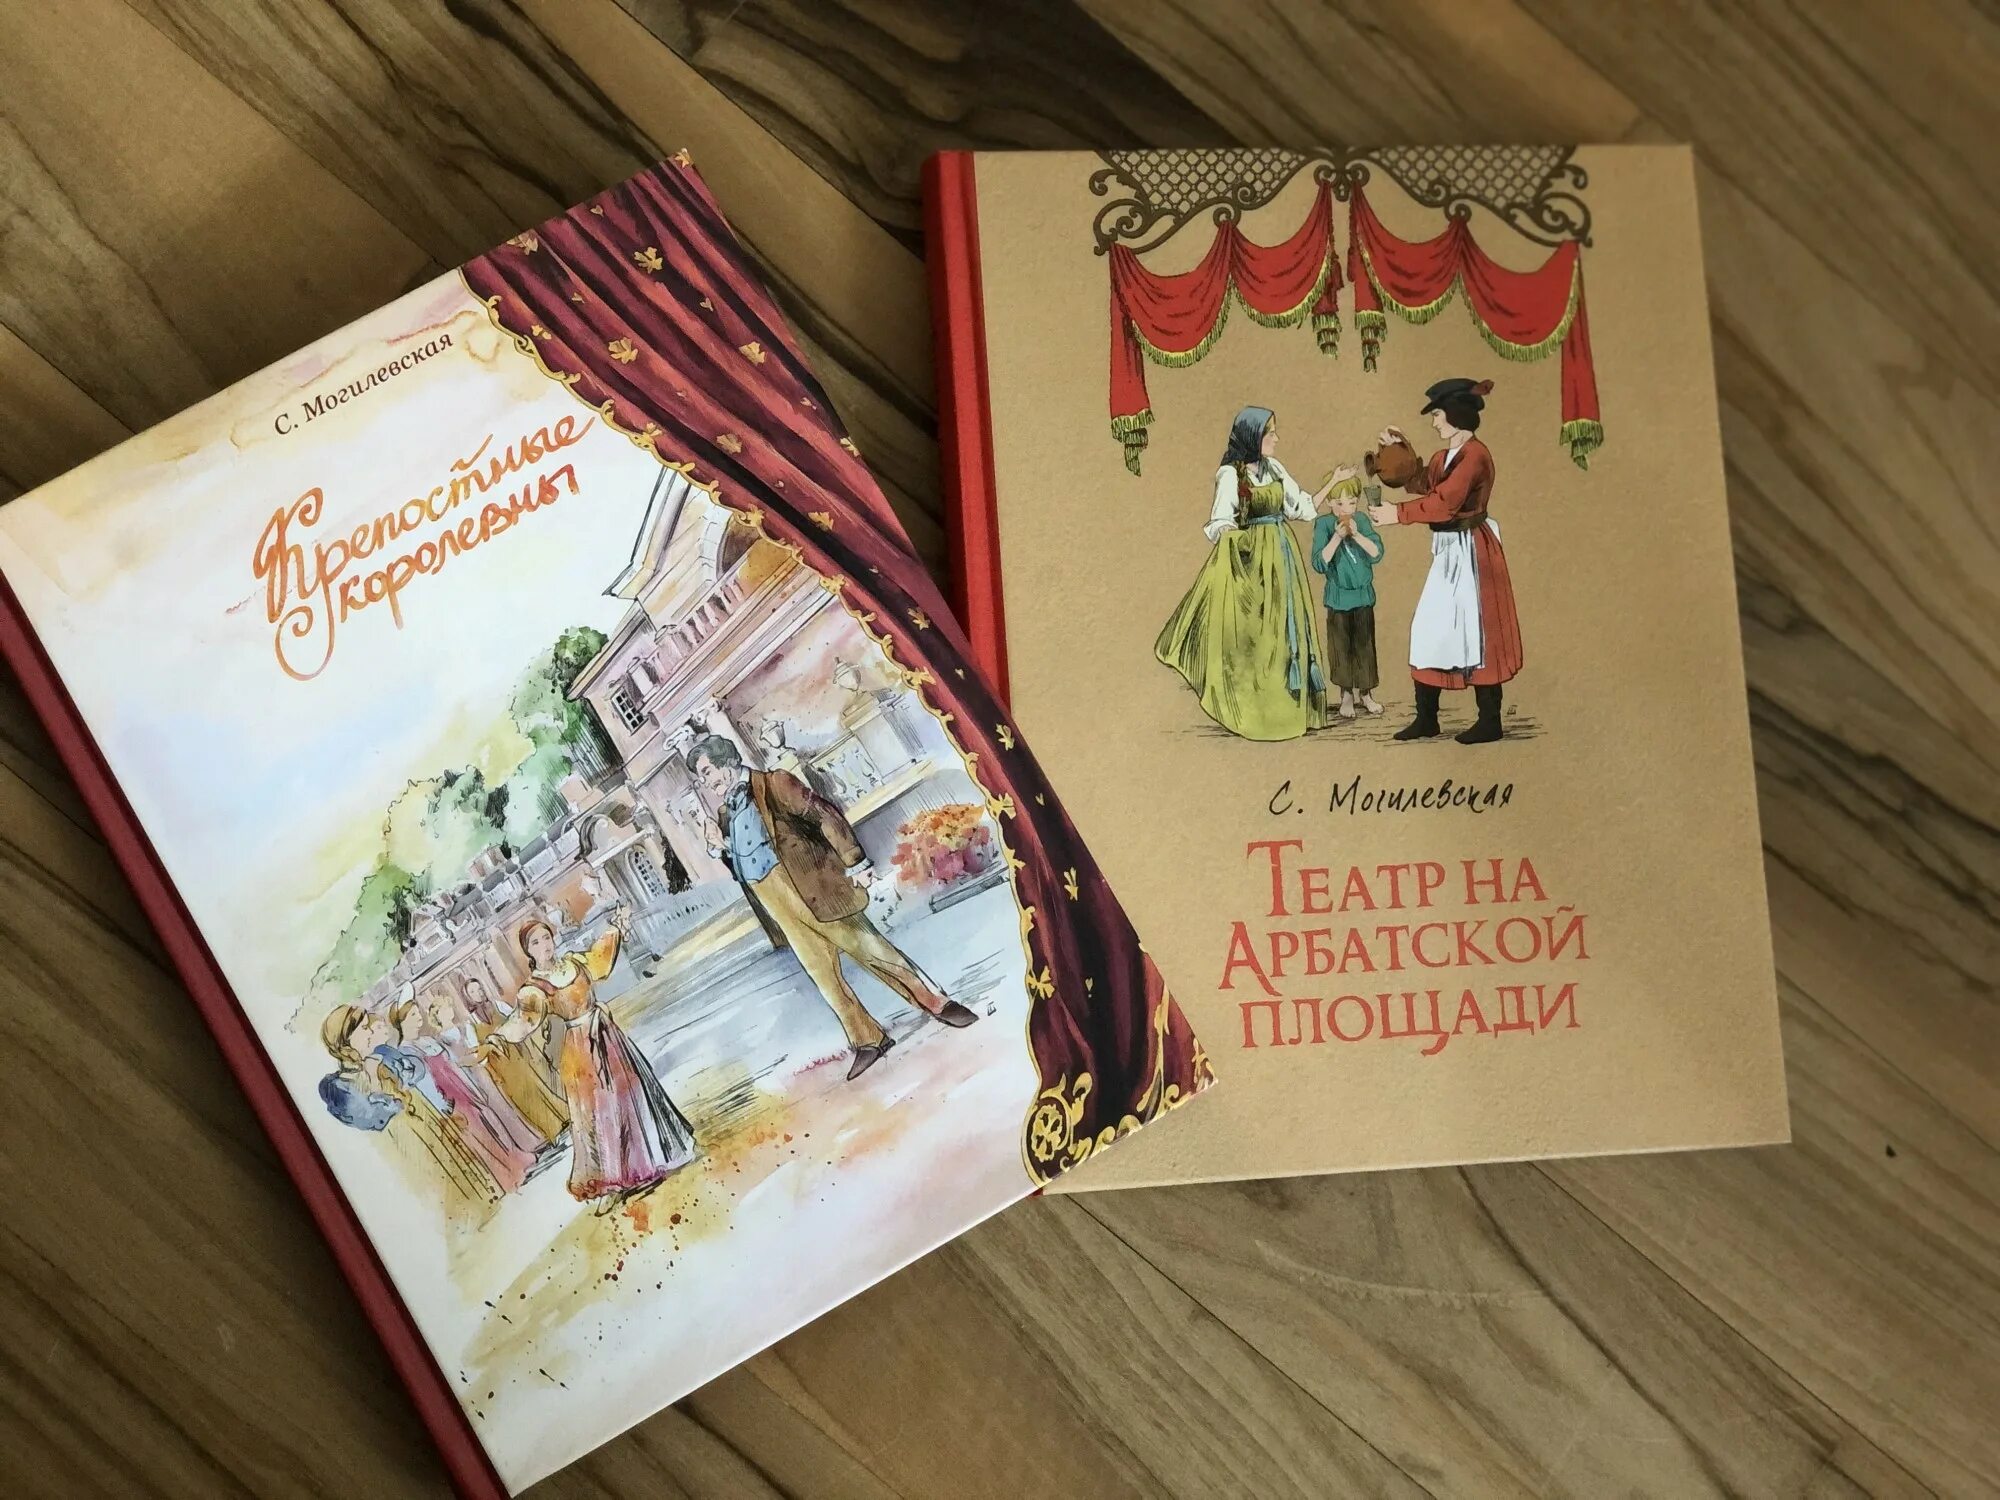 Крепостные королевны Могилевская. Оформление обложки книги. Книги о театре для детей.